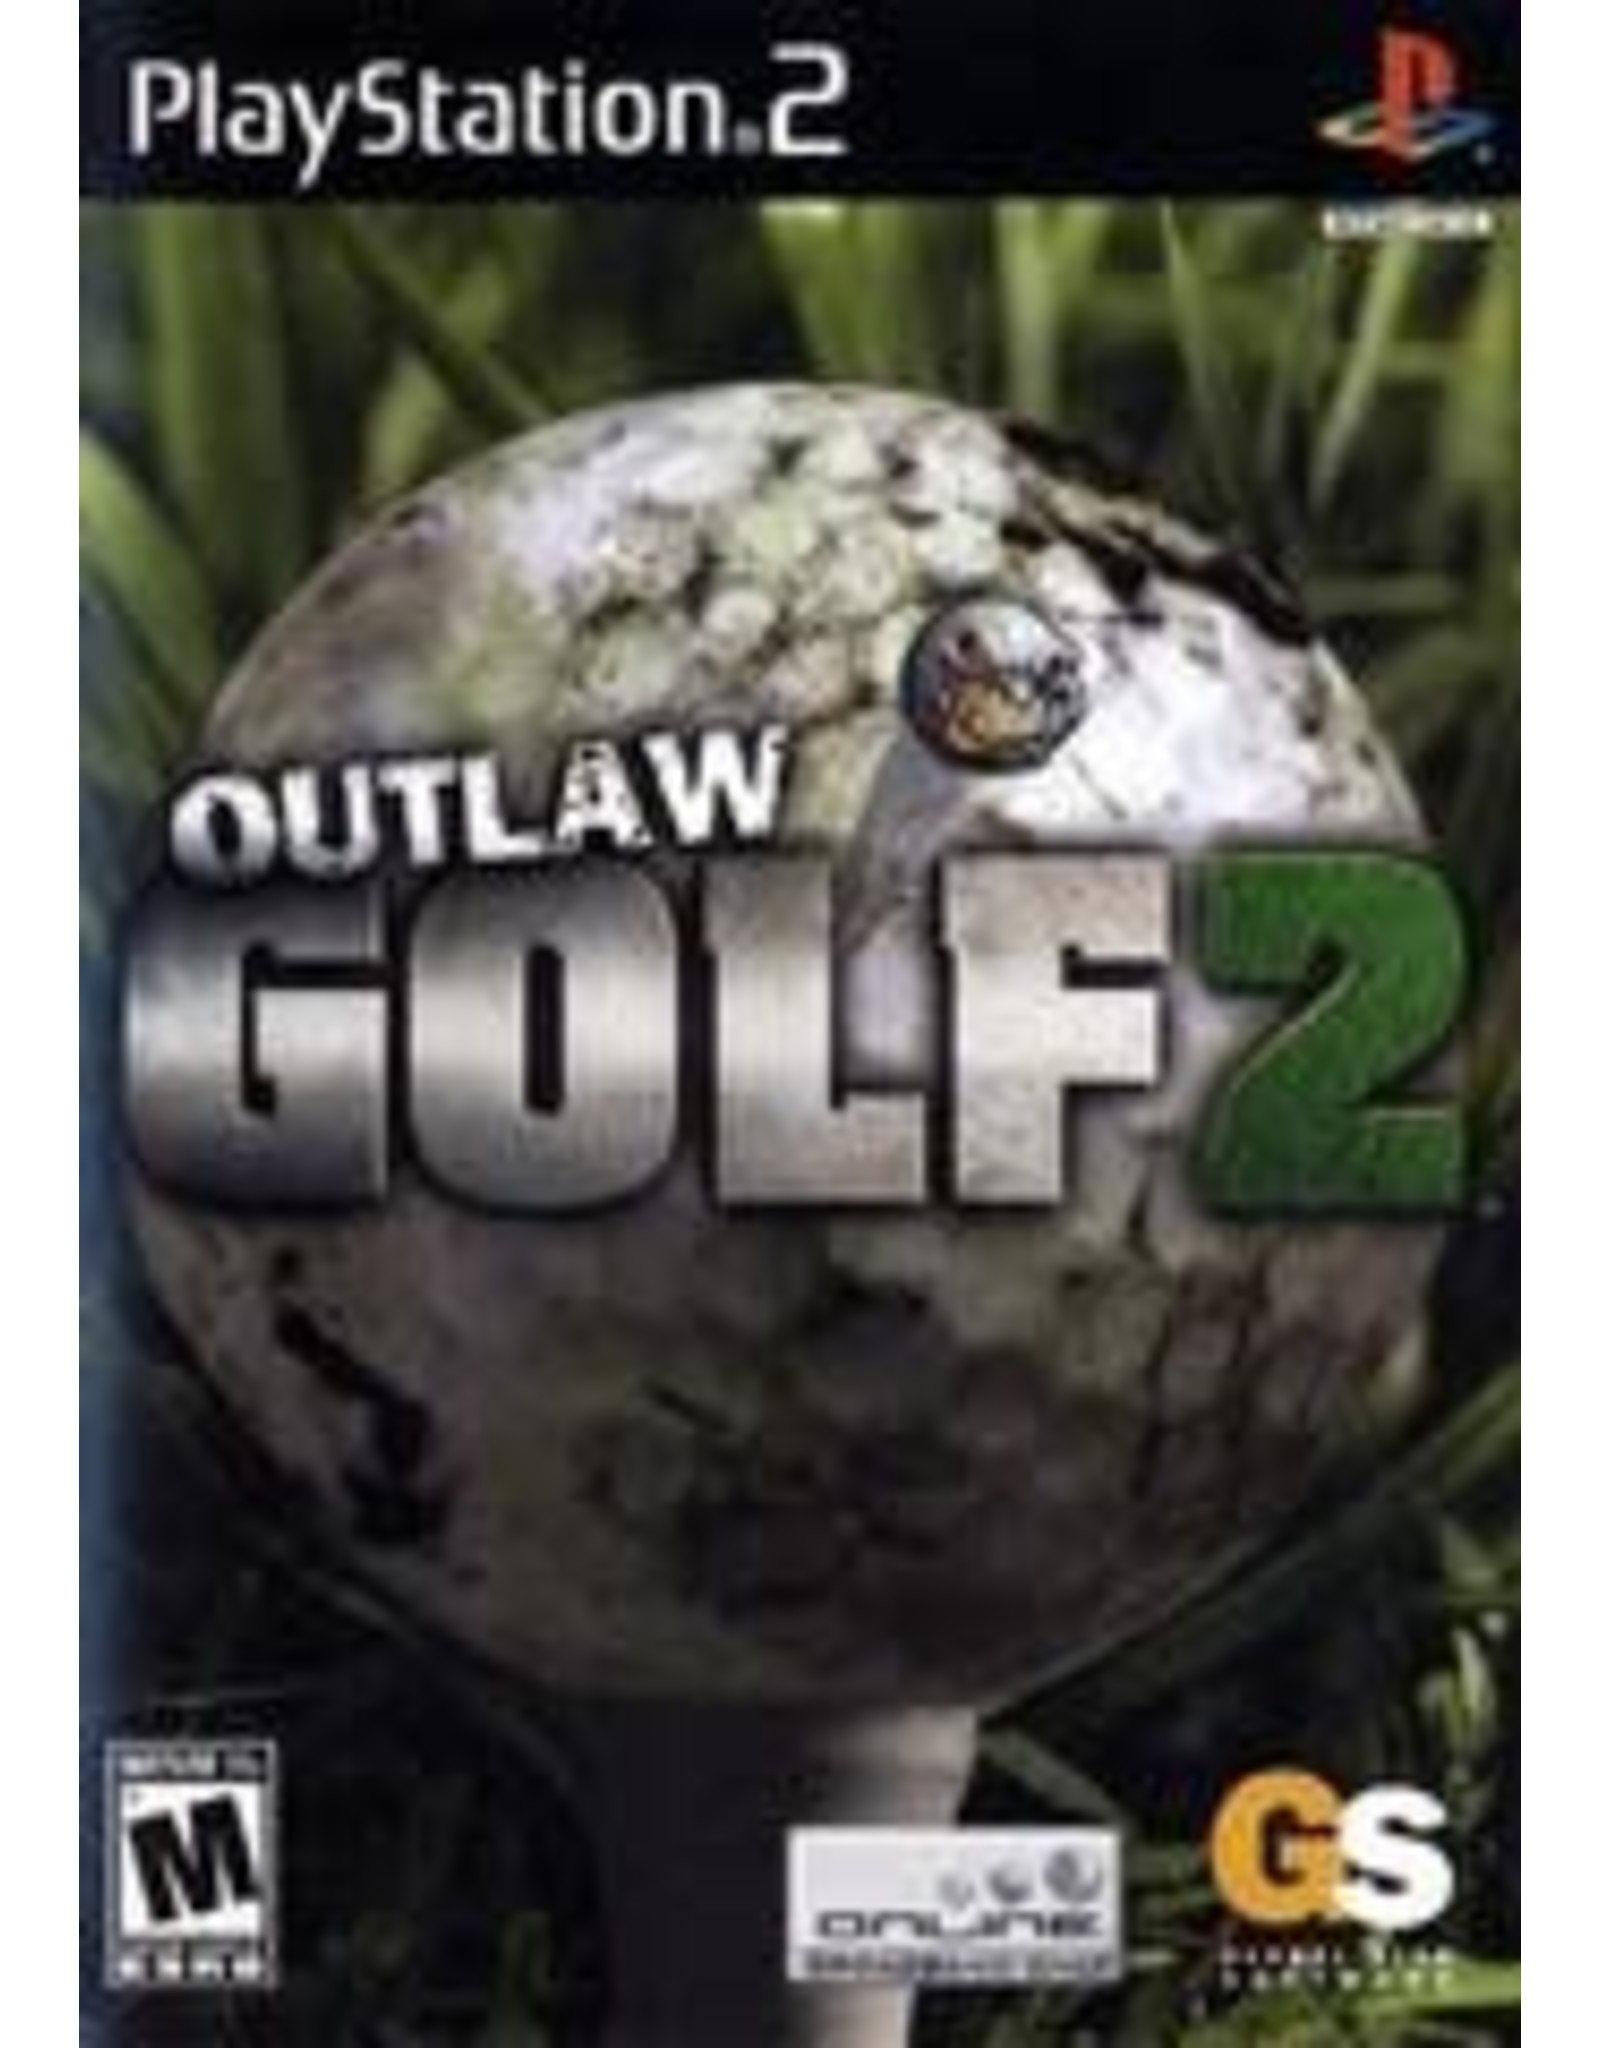 Playstation 2 Outlaw Golf 2 (CiB)